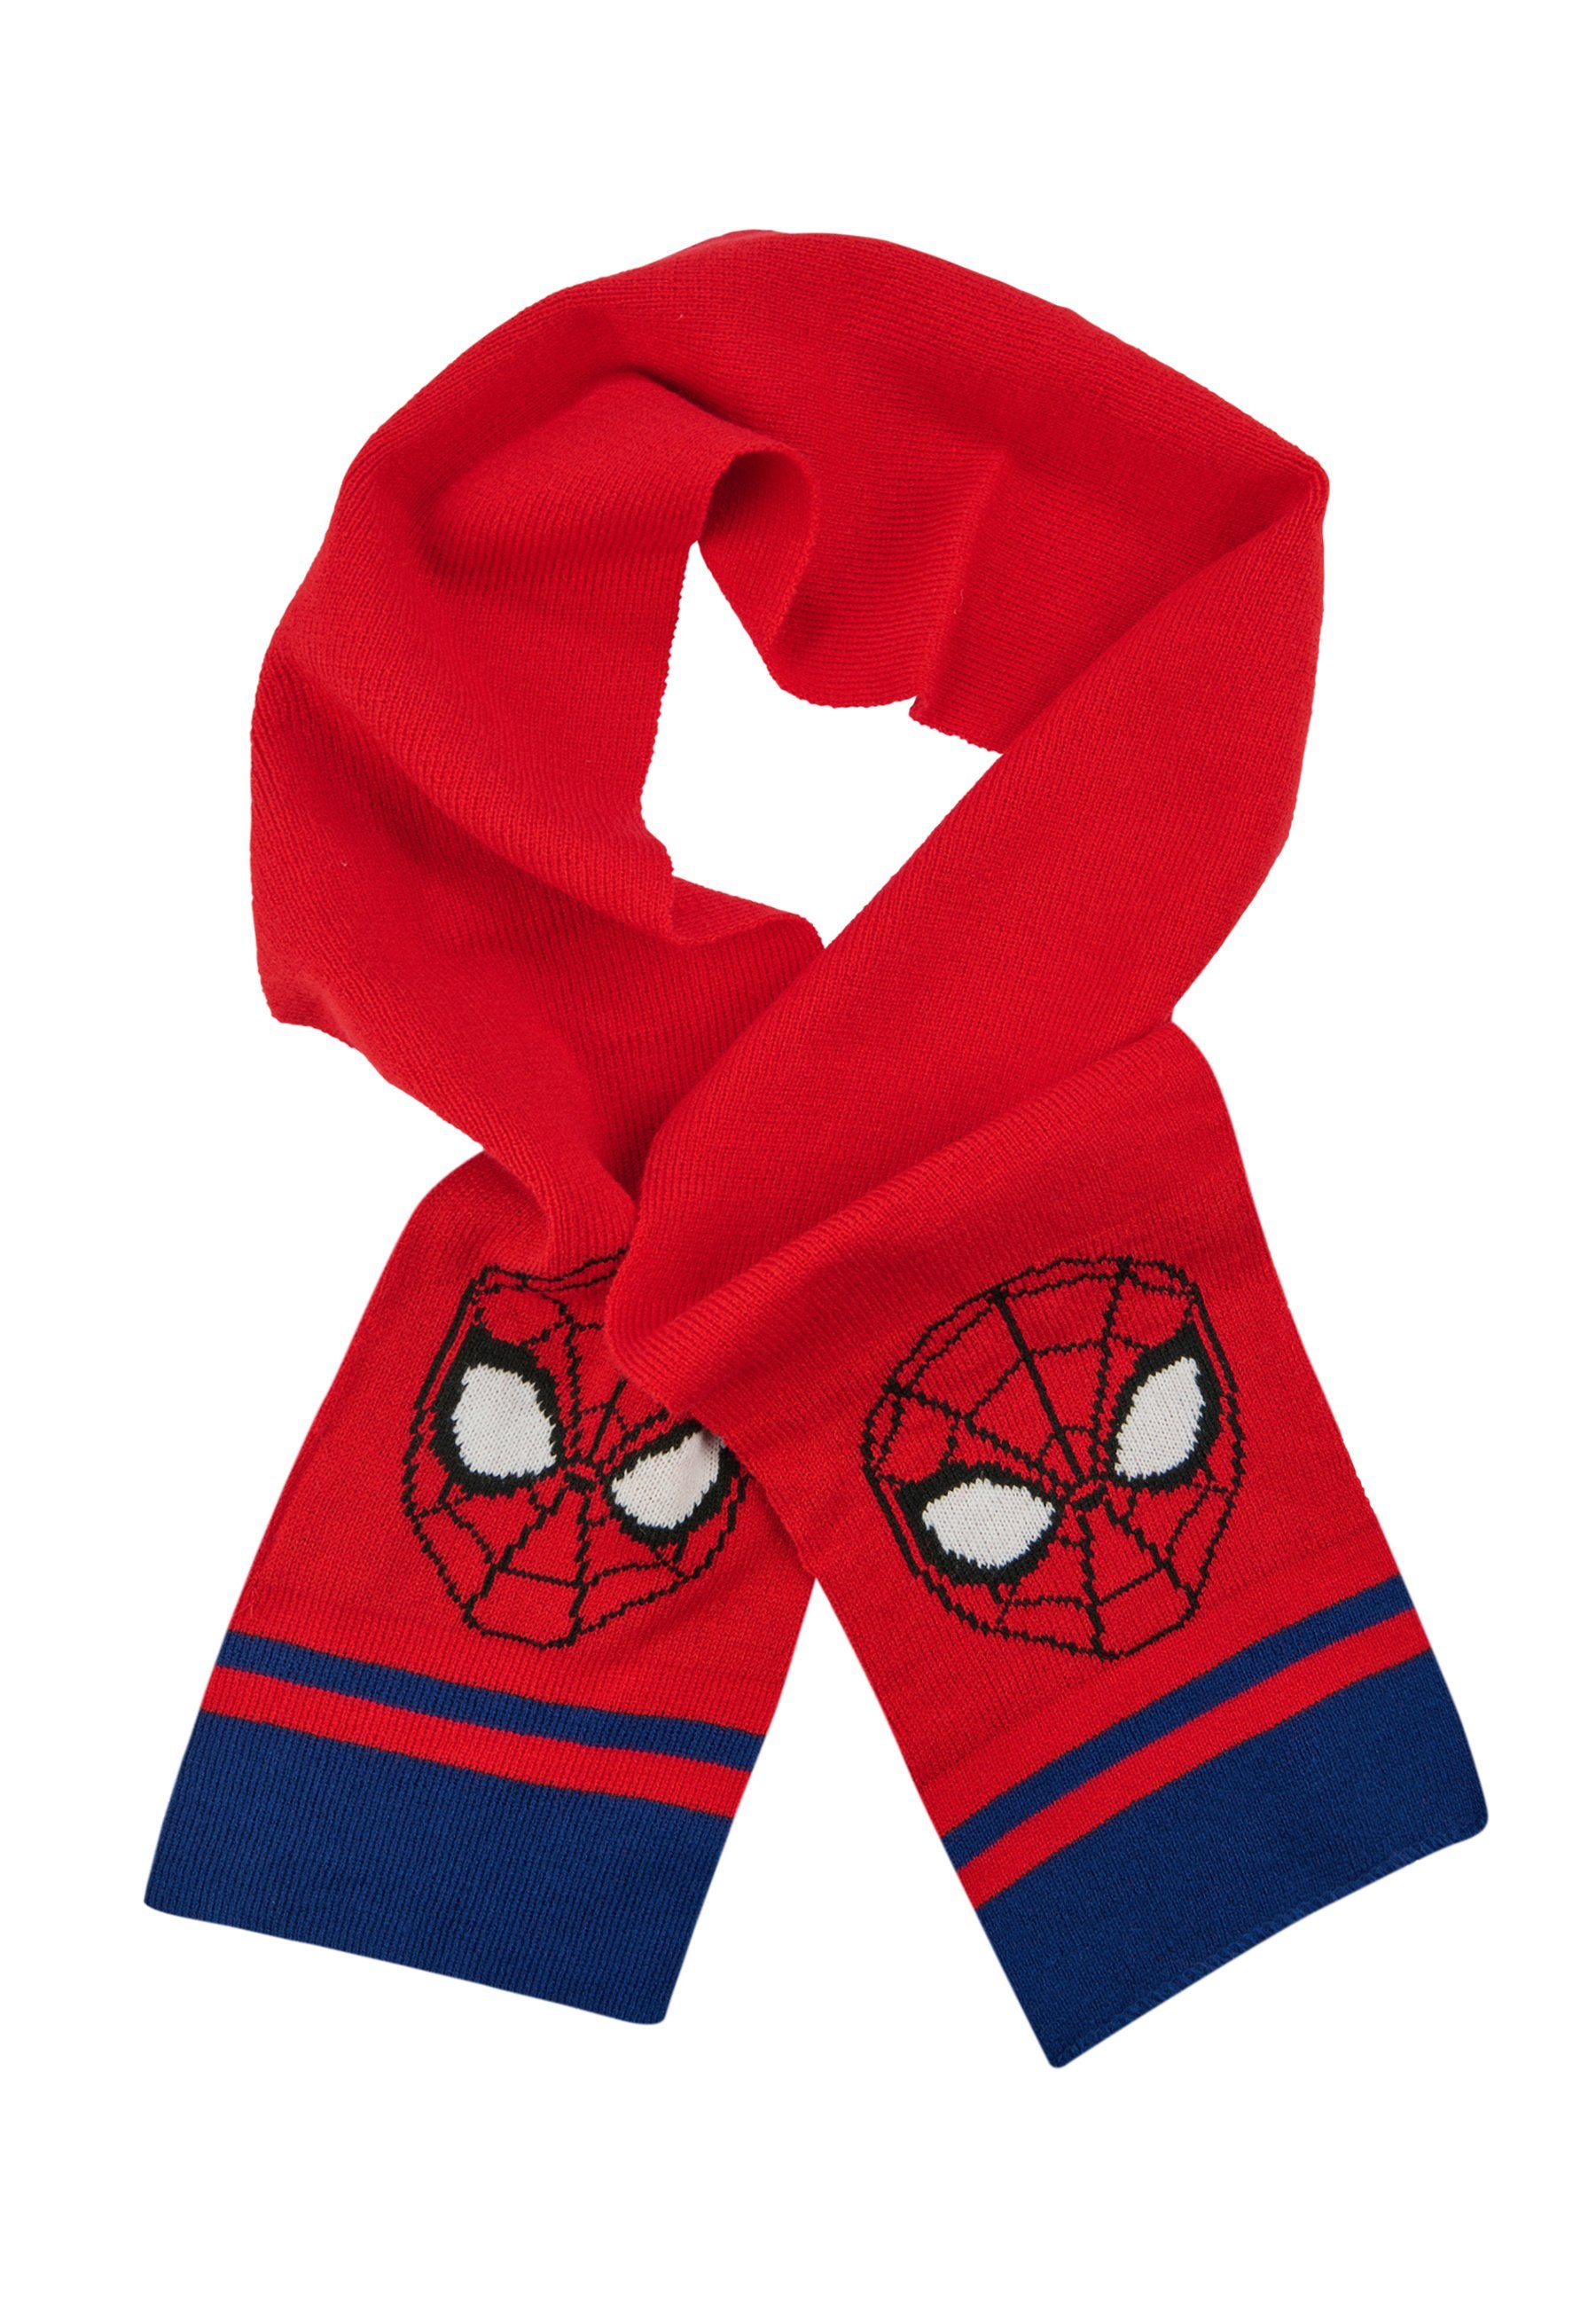 Kinder ONOMATO! Jungen Spider-Man Winter-Schal Strickschal